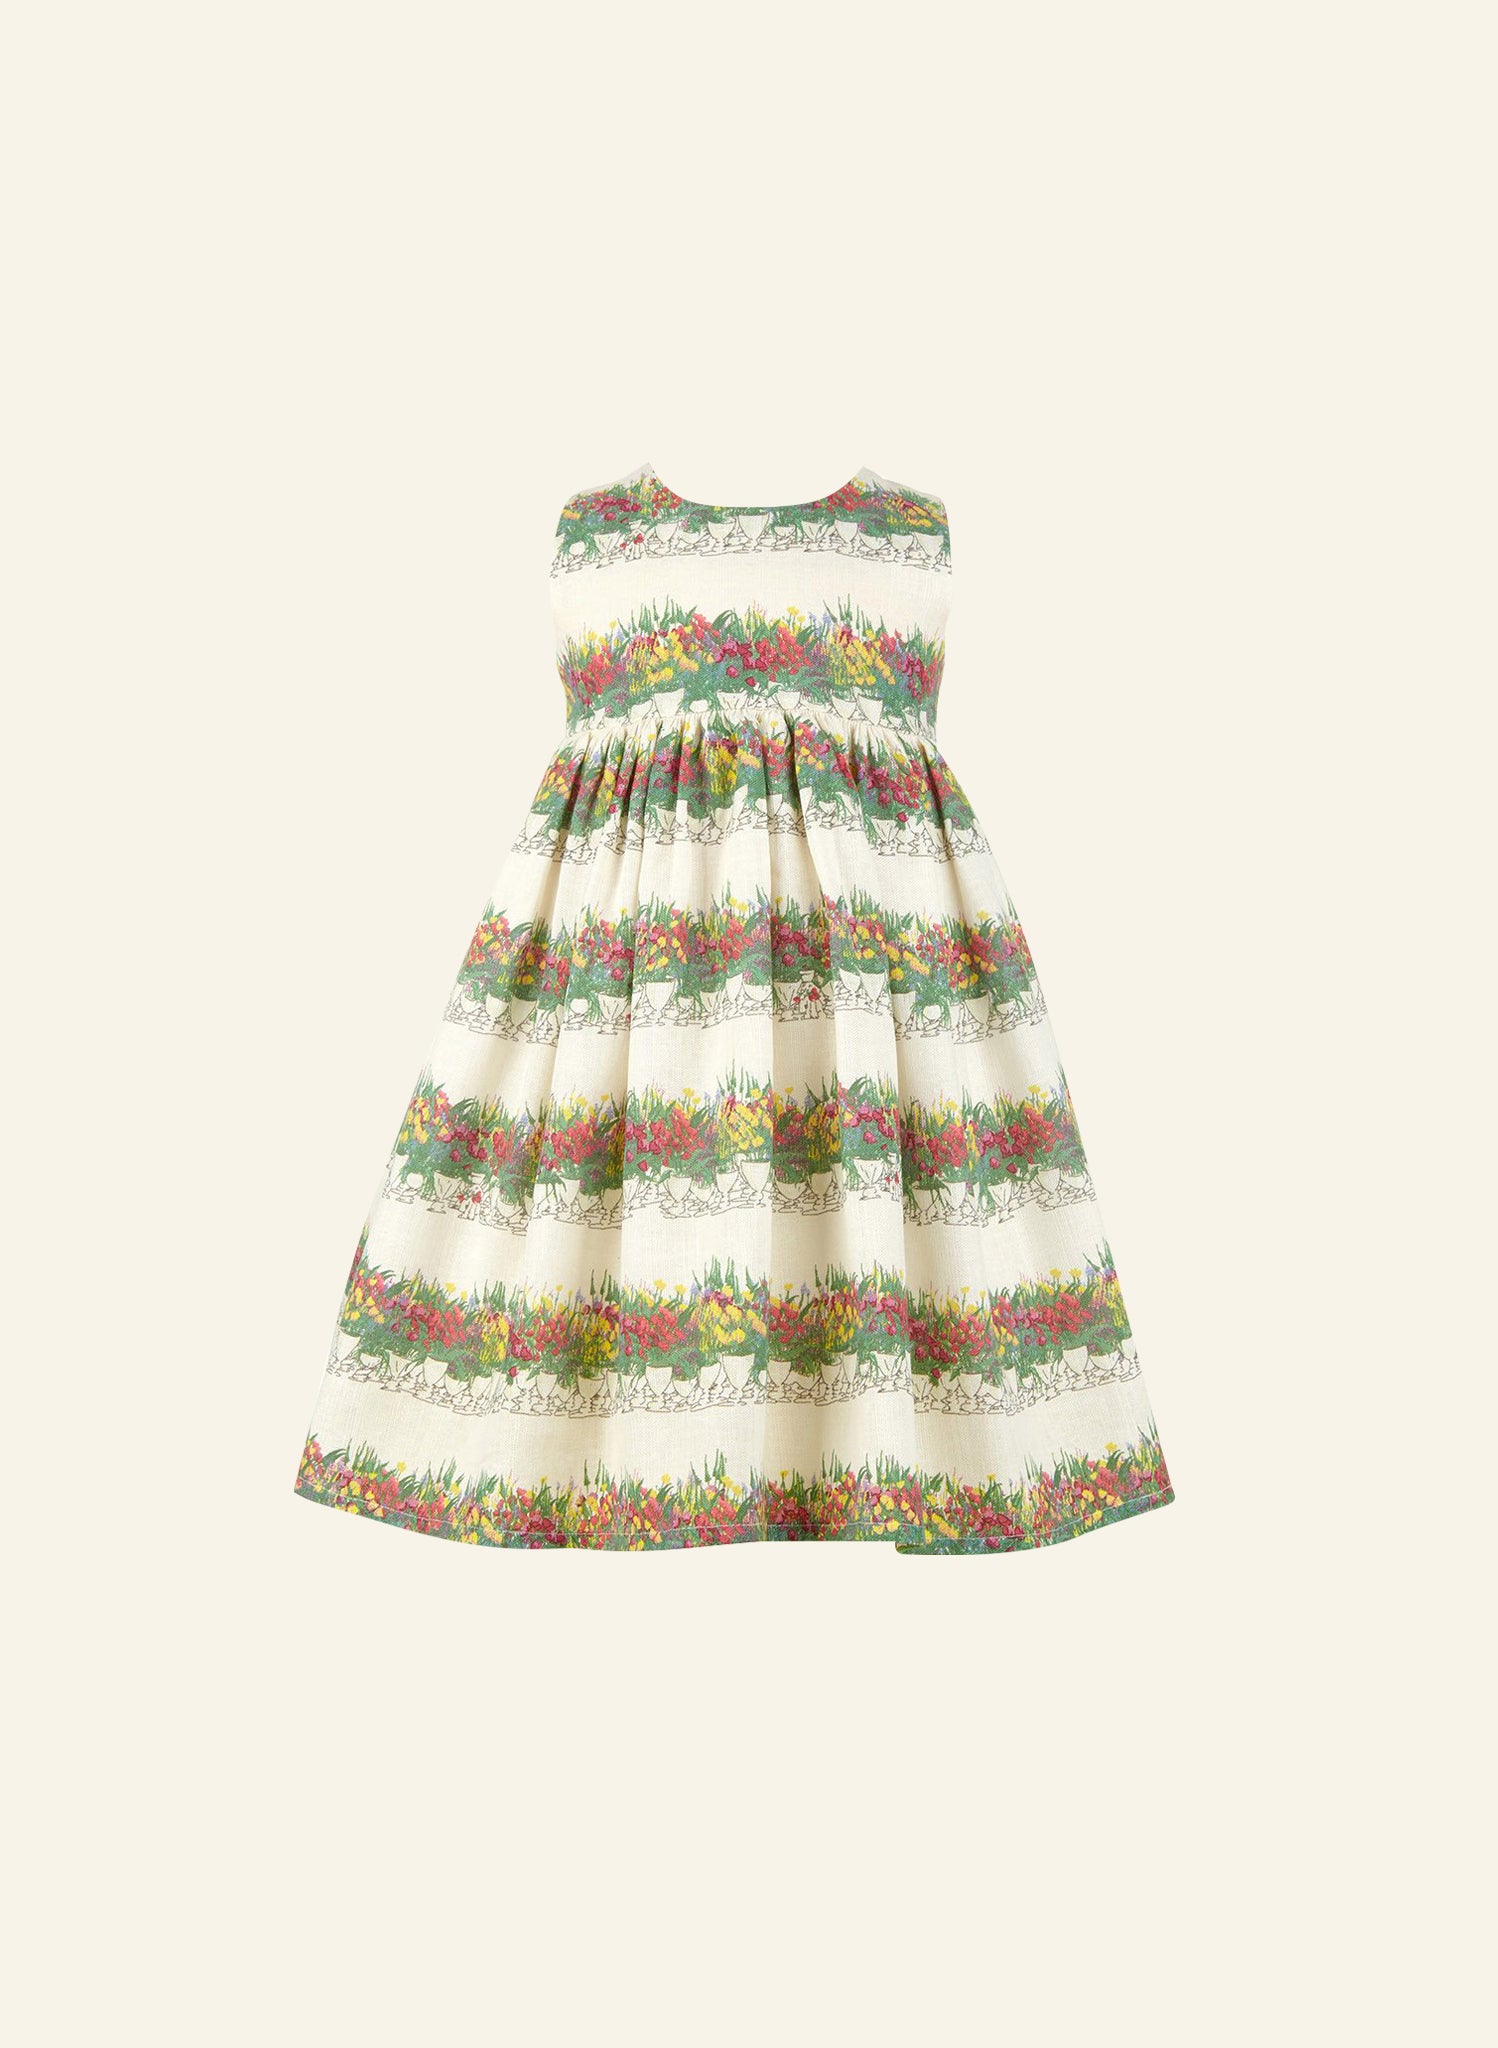 Striped Floral Summer Party Sleeveless Dress for Girls | 100% Linen | Palava